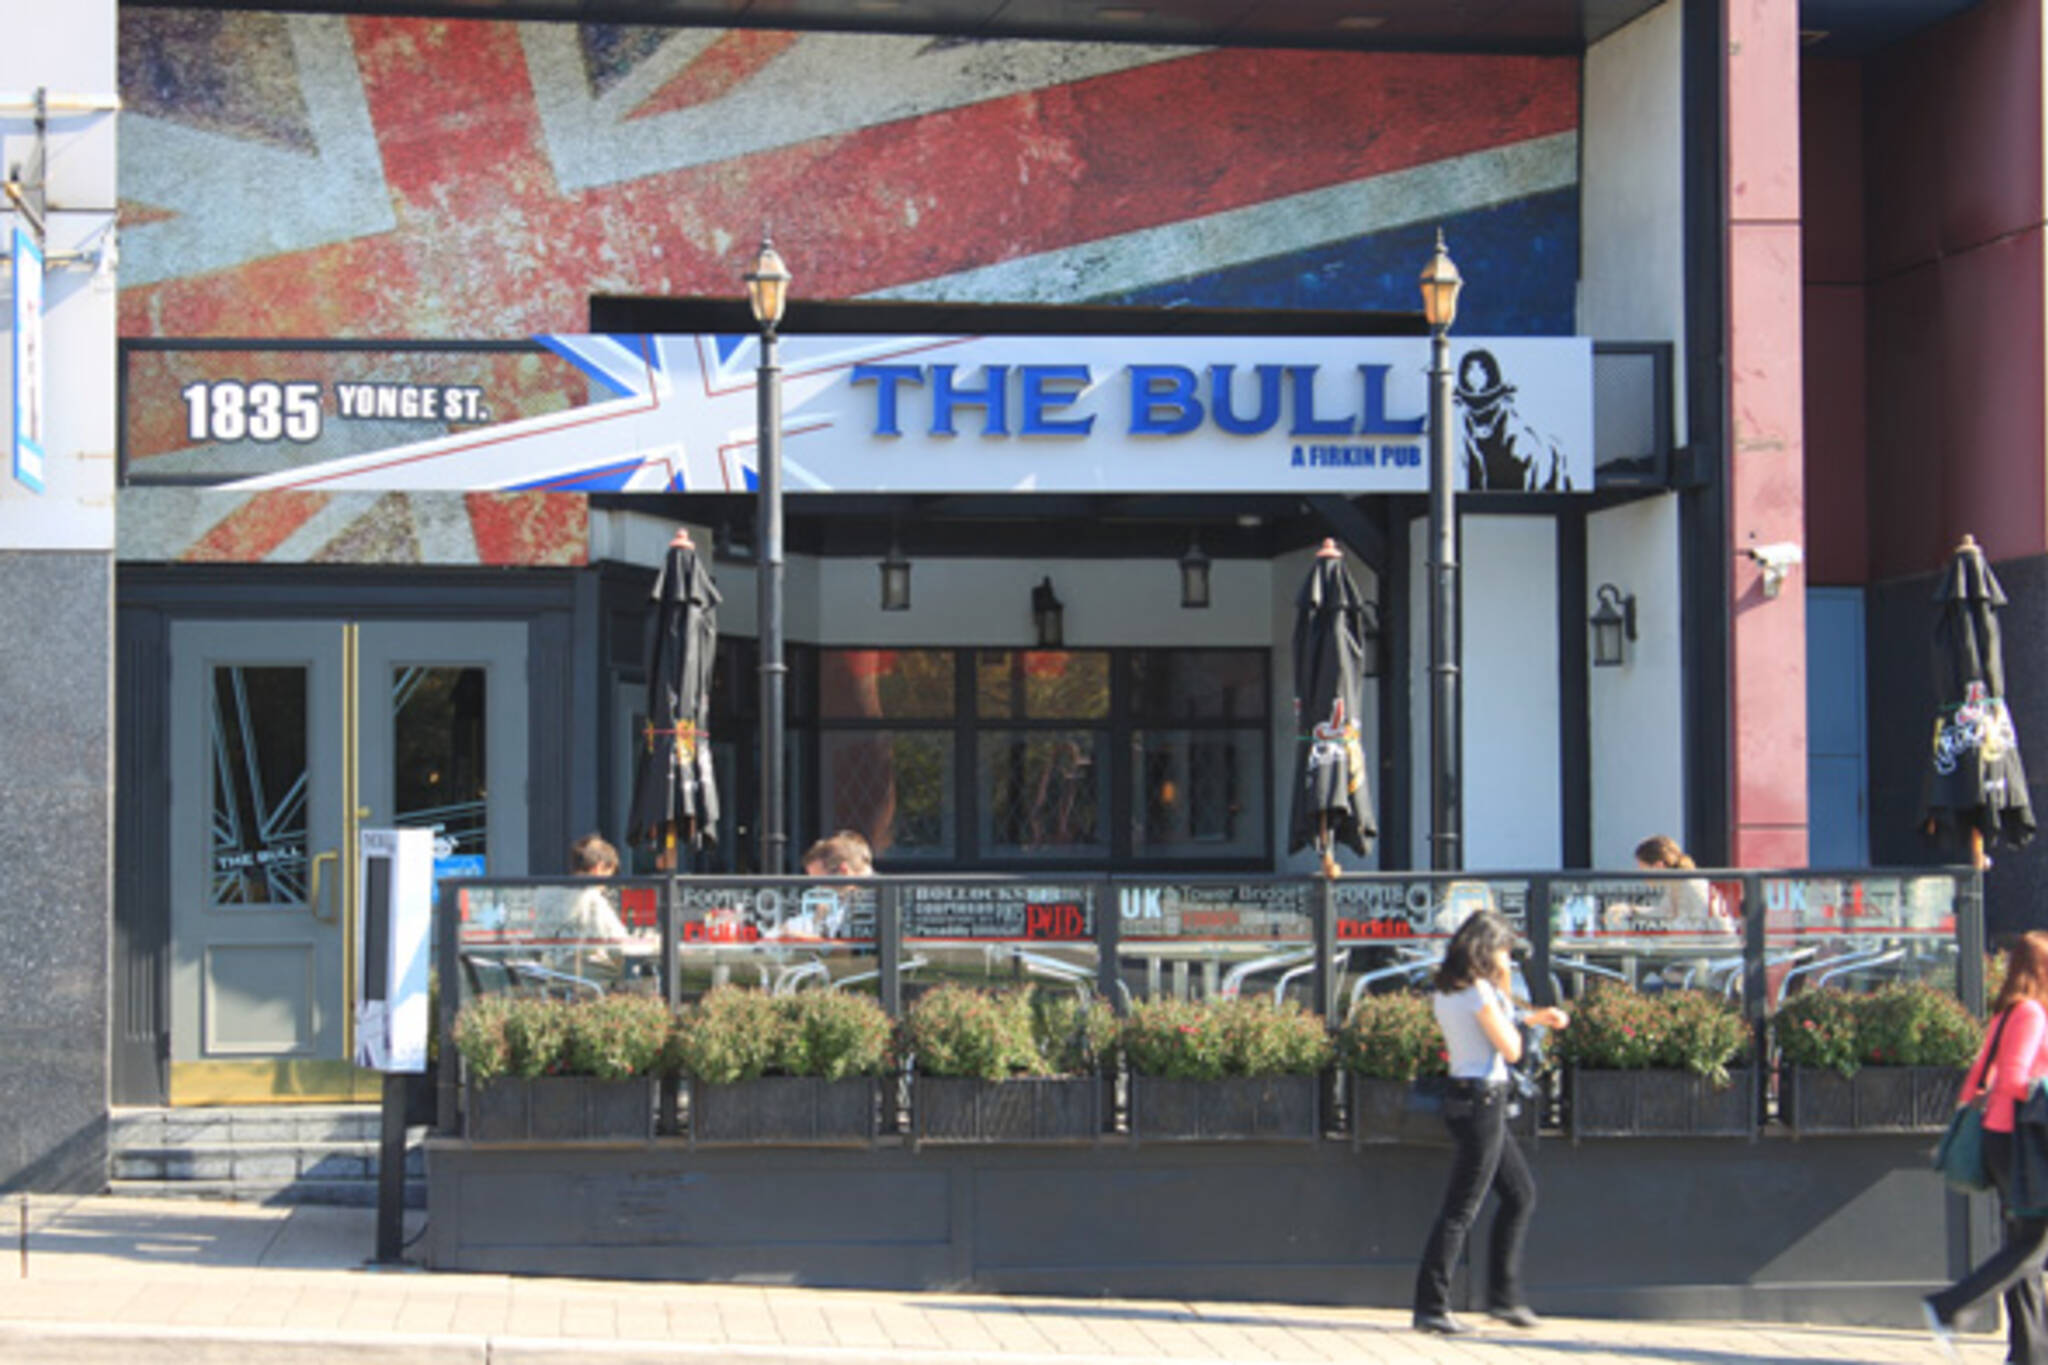 The Bull firkin pub